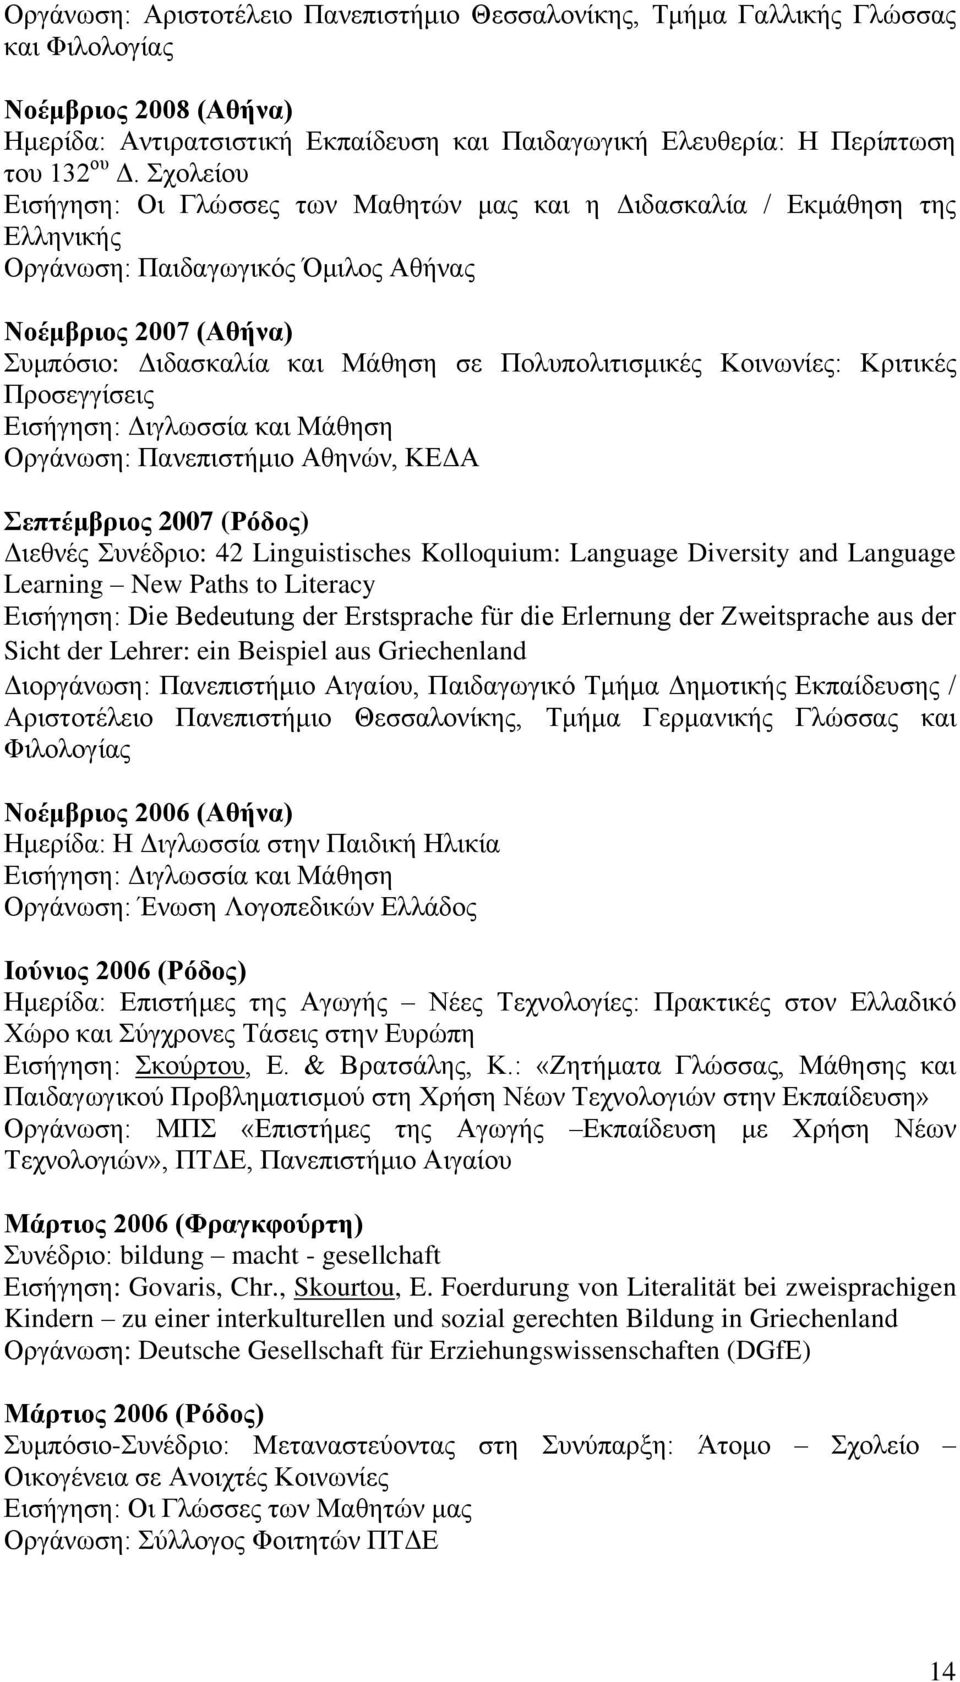 Κνηλσλίεο: Κξηηηθέο Πξνζεγγίζεηο Δηζήγεζε: Γηγισζζία θαη Μάζεζε Οξγάλσζε: Παλεπηζηήκην Αζελώλ, ΚΔΓΑ επηέκβξηνο 2007 (Ρόδνο) Γηεζλέο πλέδξην: 42 Linguistisches Kolloquium: Language Diversity and